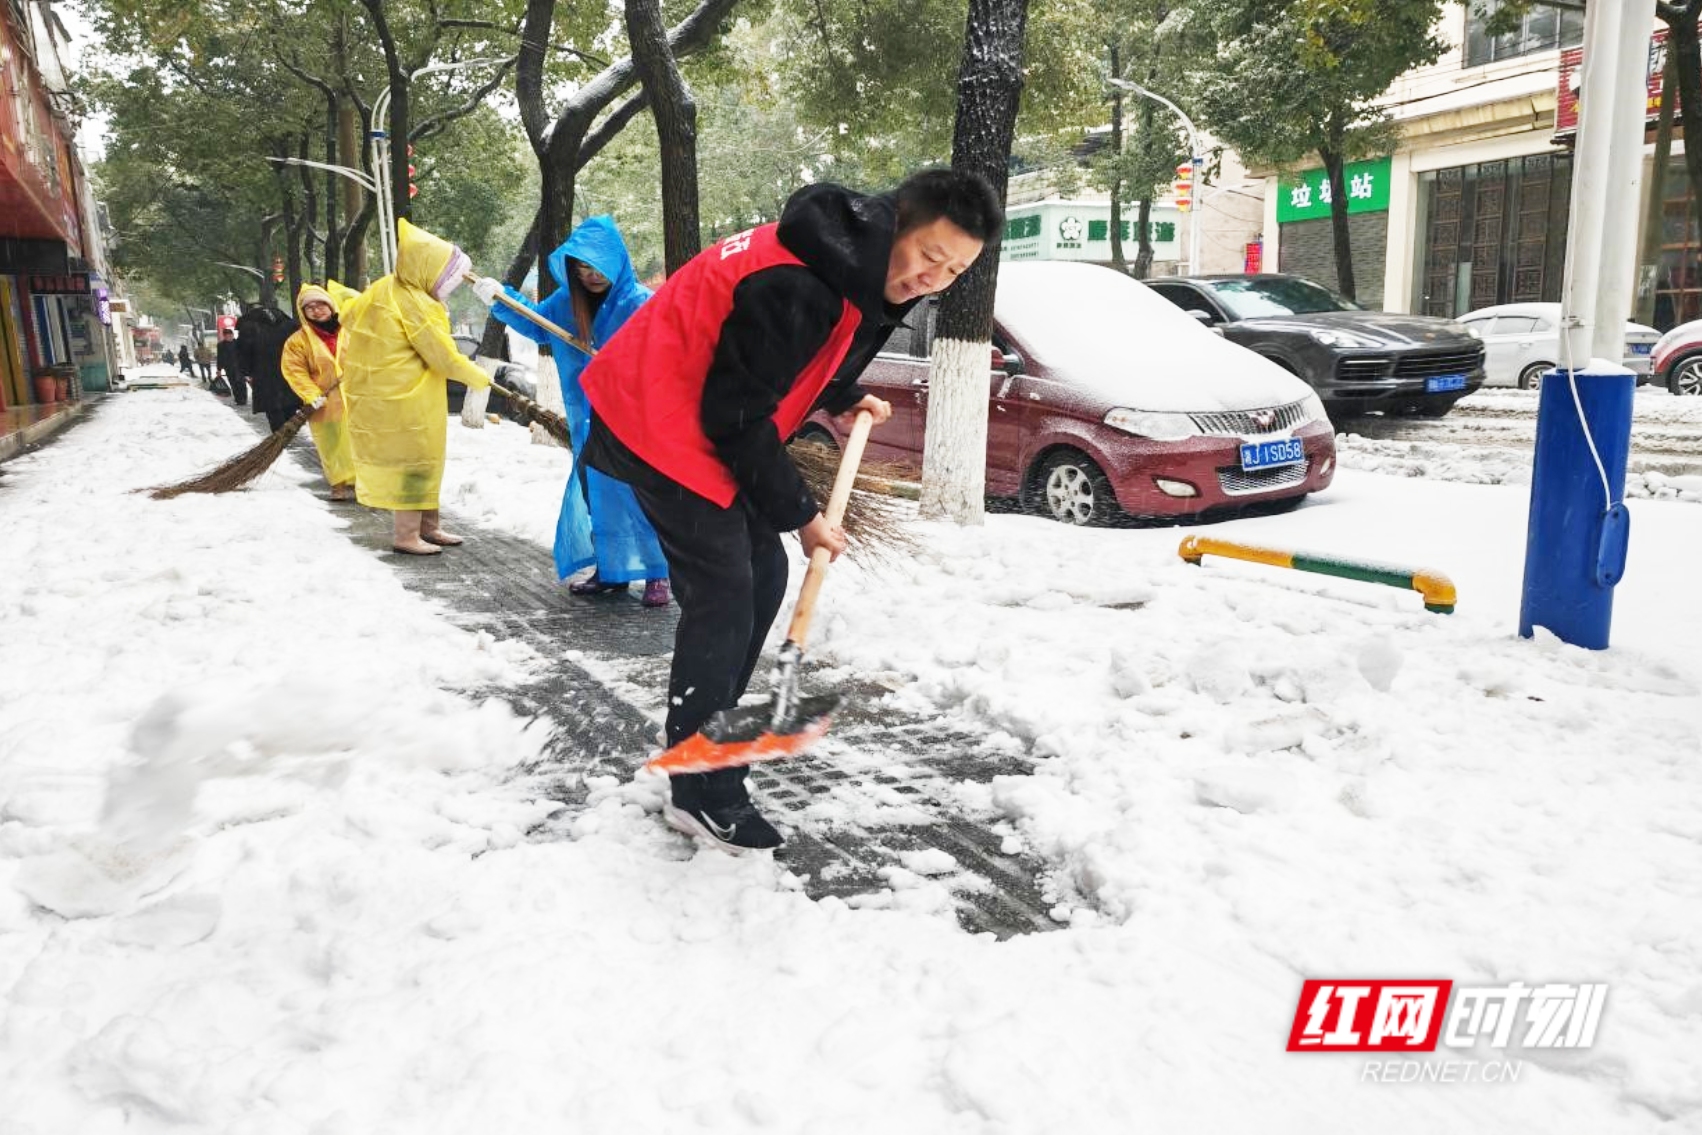 桃源县发改局(县国动办)组织干部职工40余人下沉包保路段开展扫雪除冰志愿服务活动，用实际行动守护人民群众出行安全。